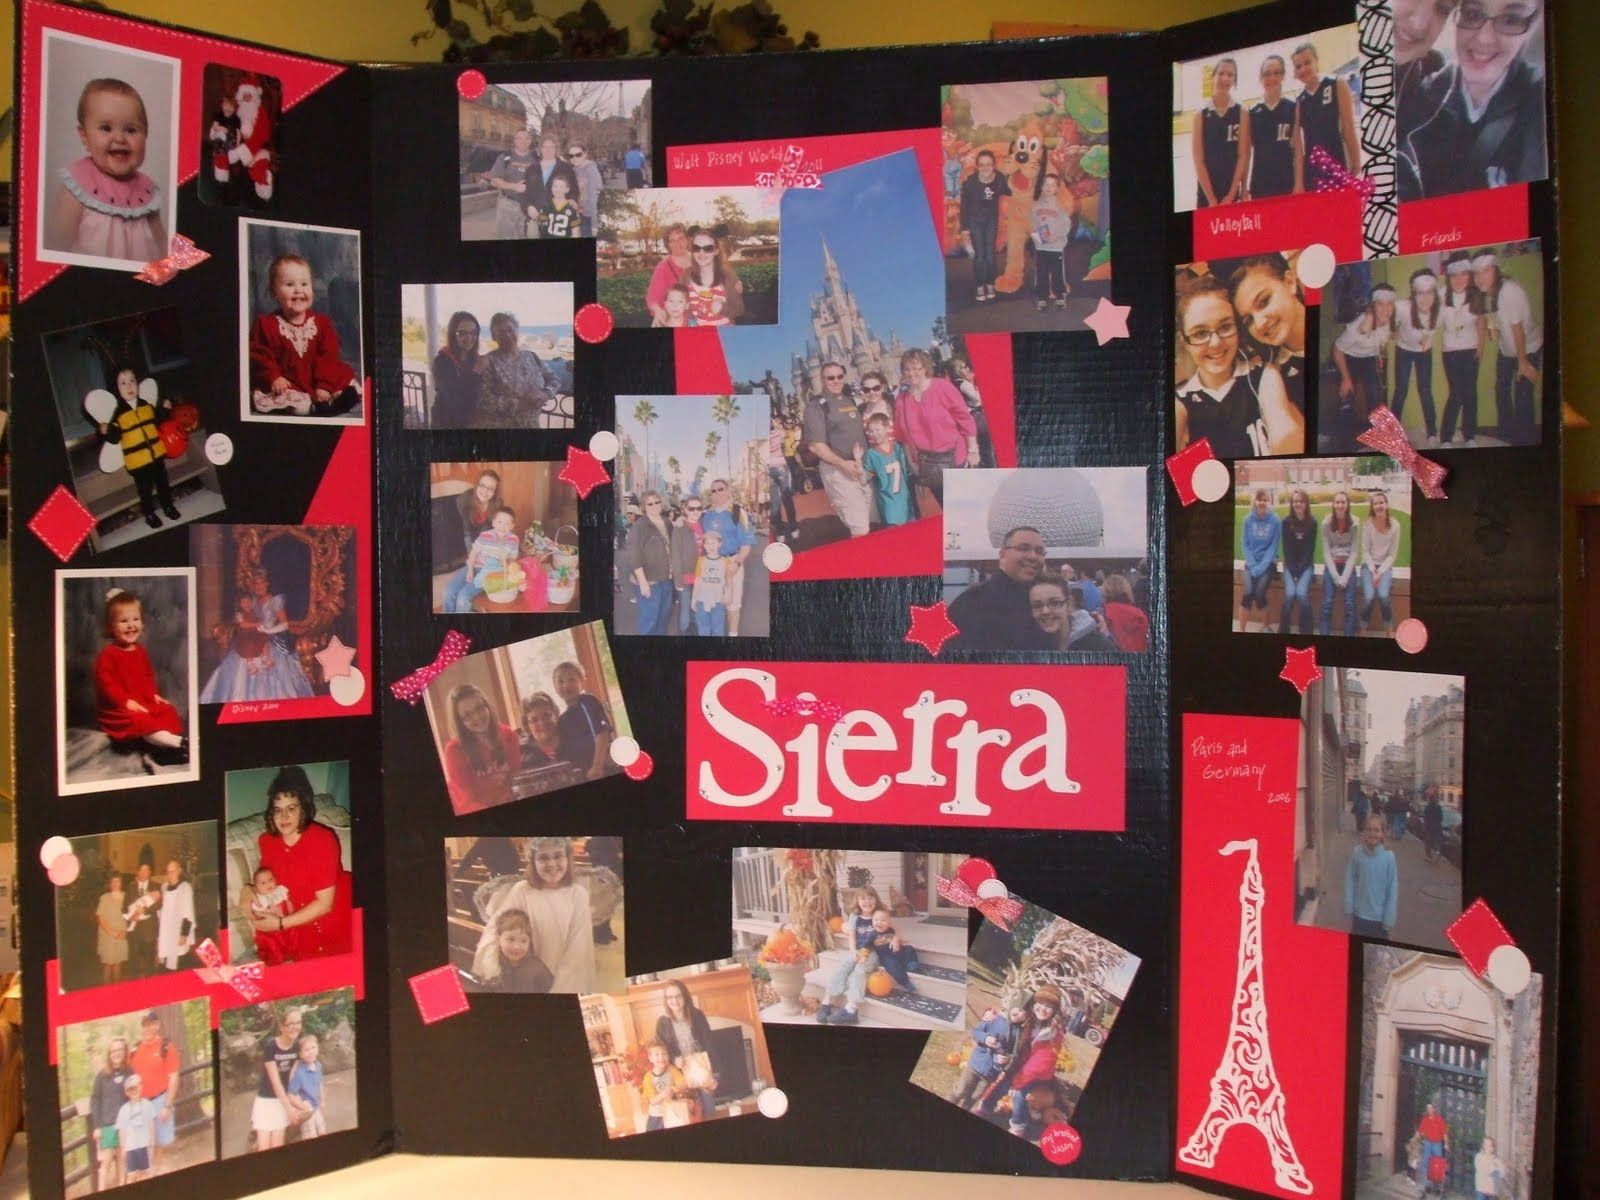 8Th Grade Graduation Party Ideas School
 Congratulations Sierra